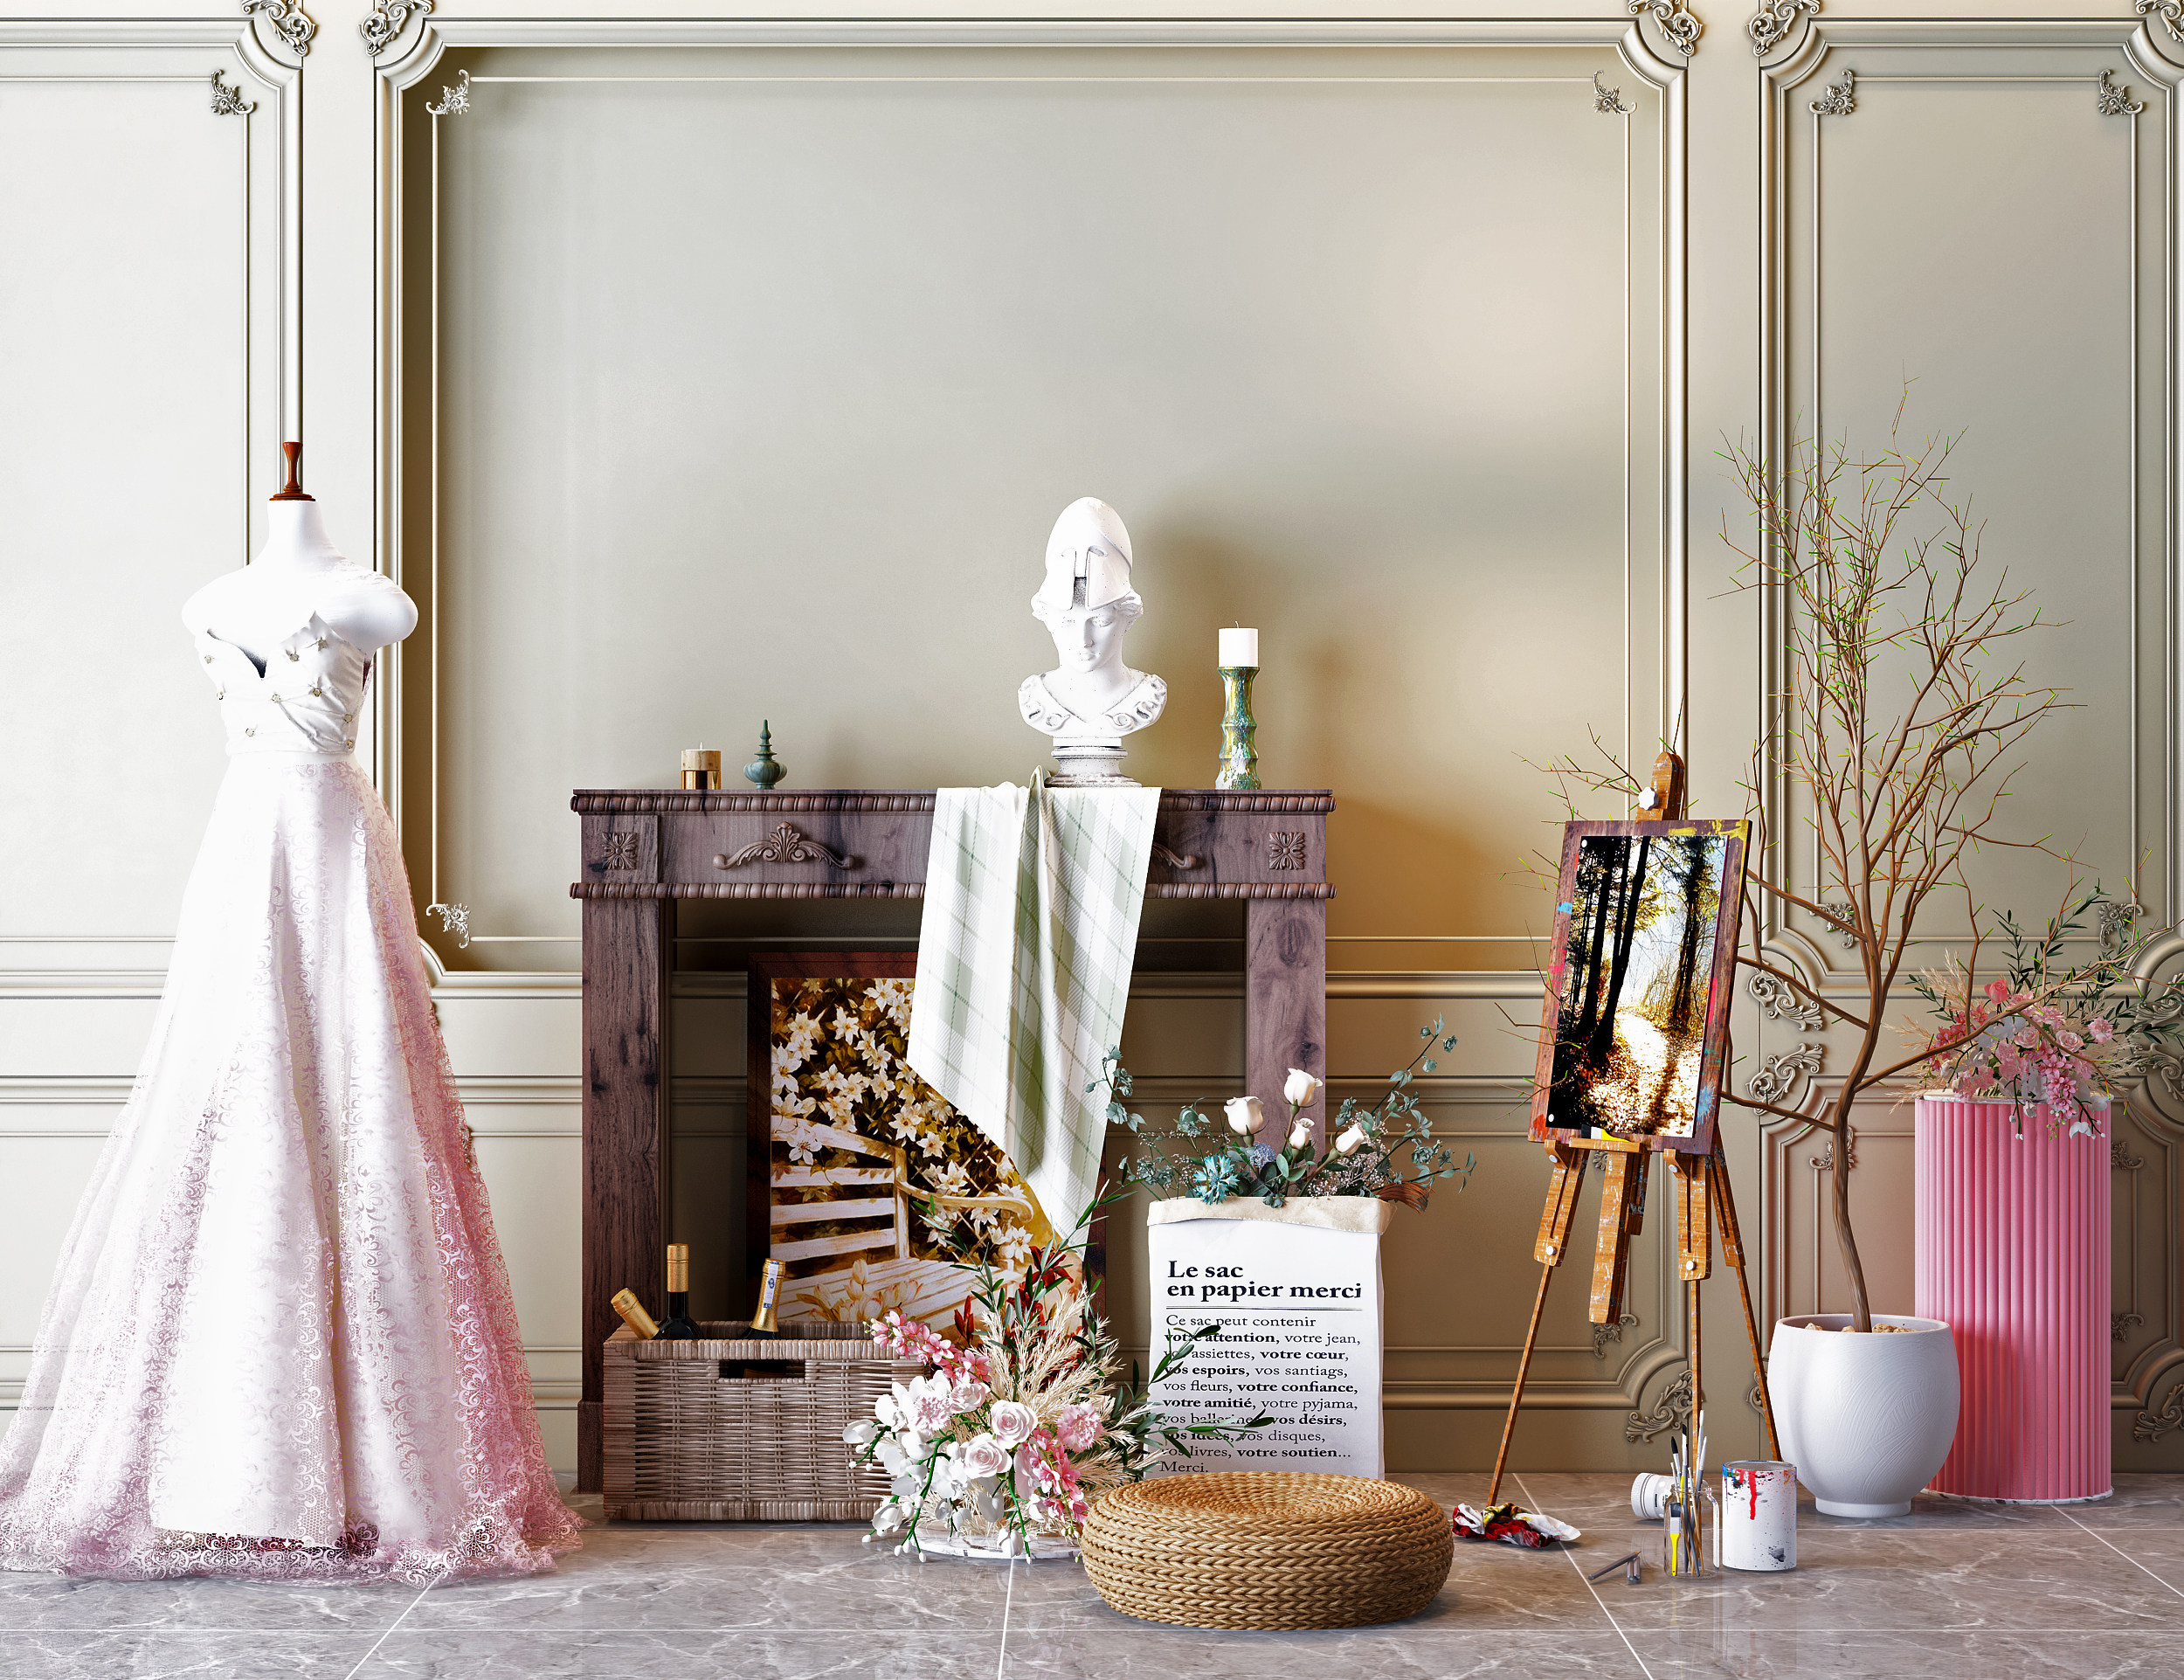 现代鲜花 壁炉 婚纱 摆件 美陈 装饰品 3d模型下载